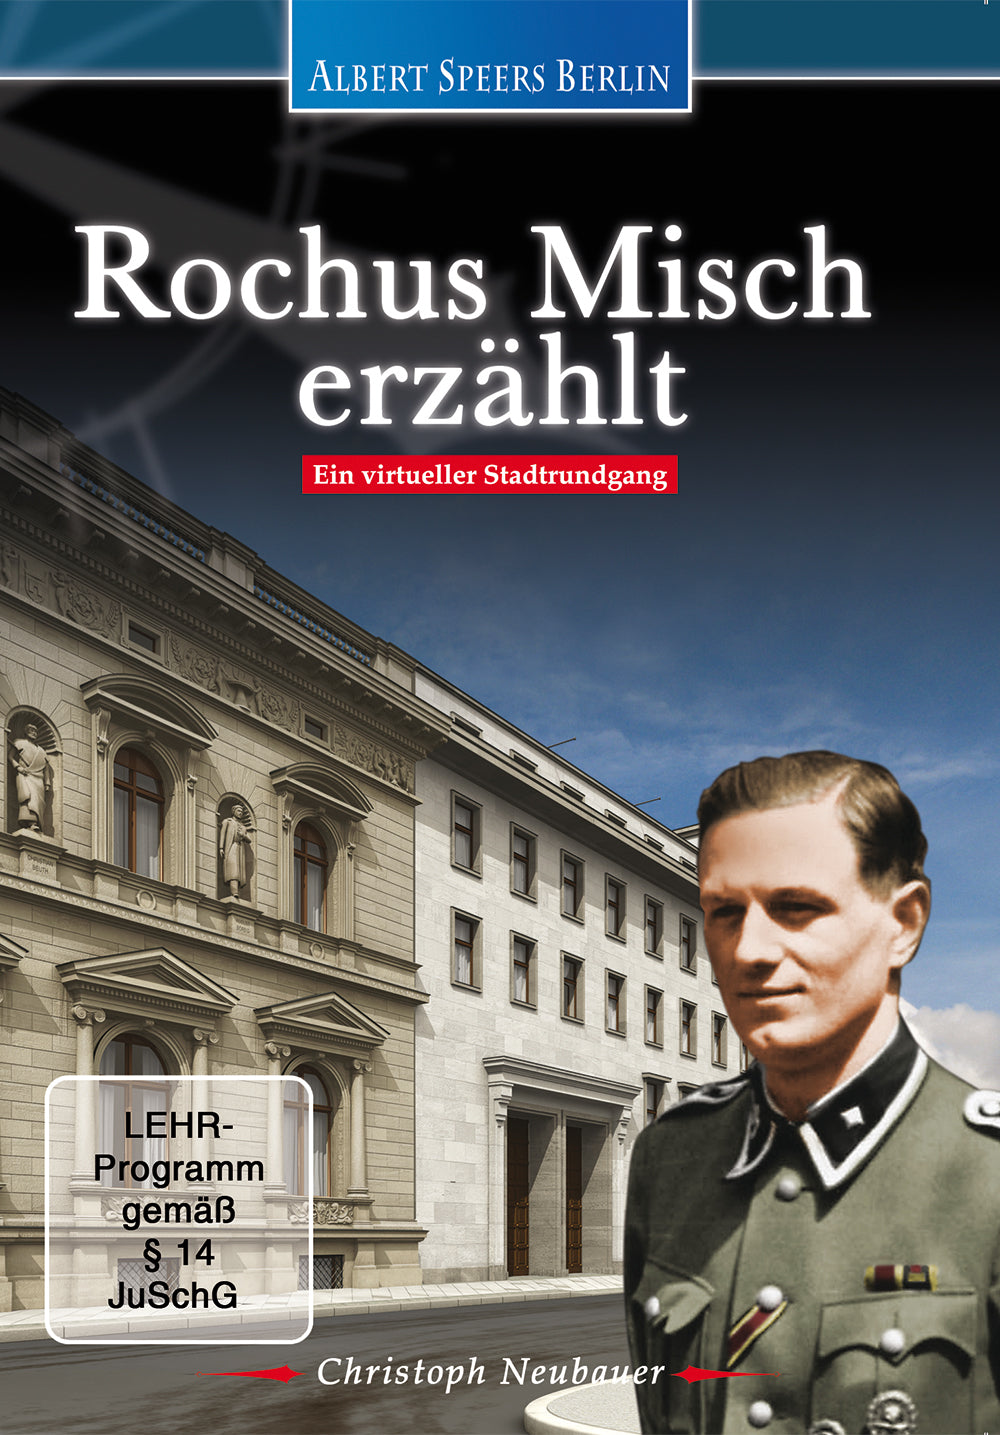 DVD "Rochus Misch erzählt" (German)